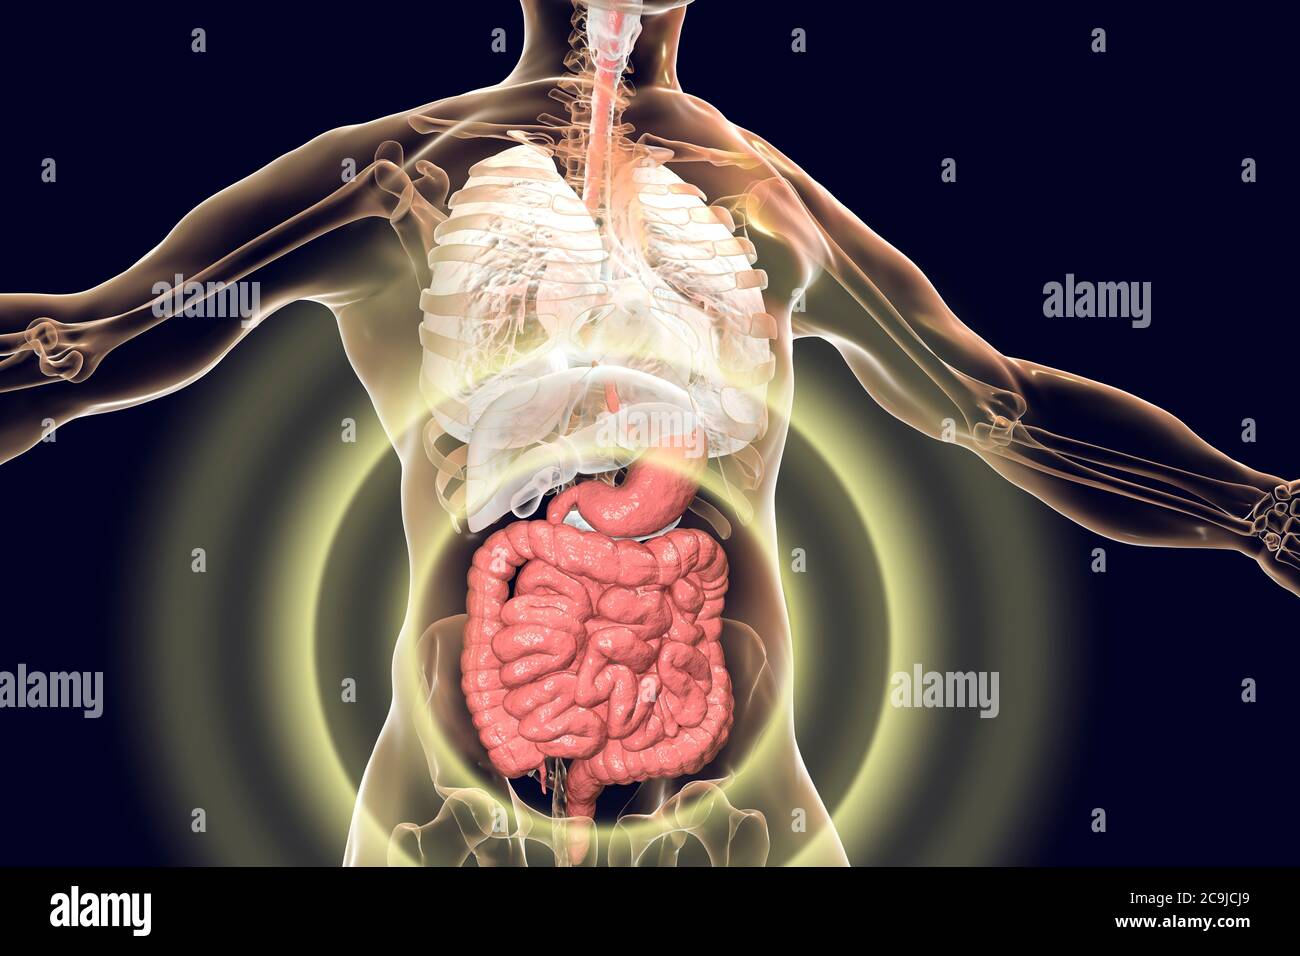 Anatomía del cuerpo humano con sistema digestivo resaltado, ilustración de computadora. Foto de stock